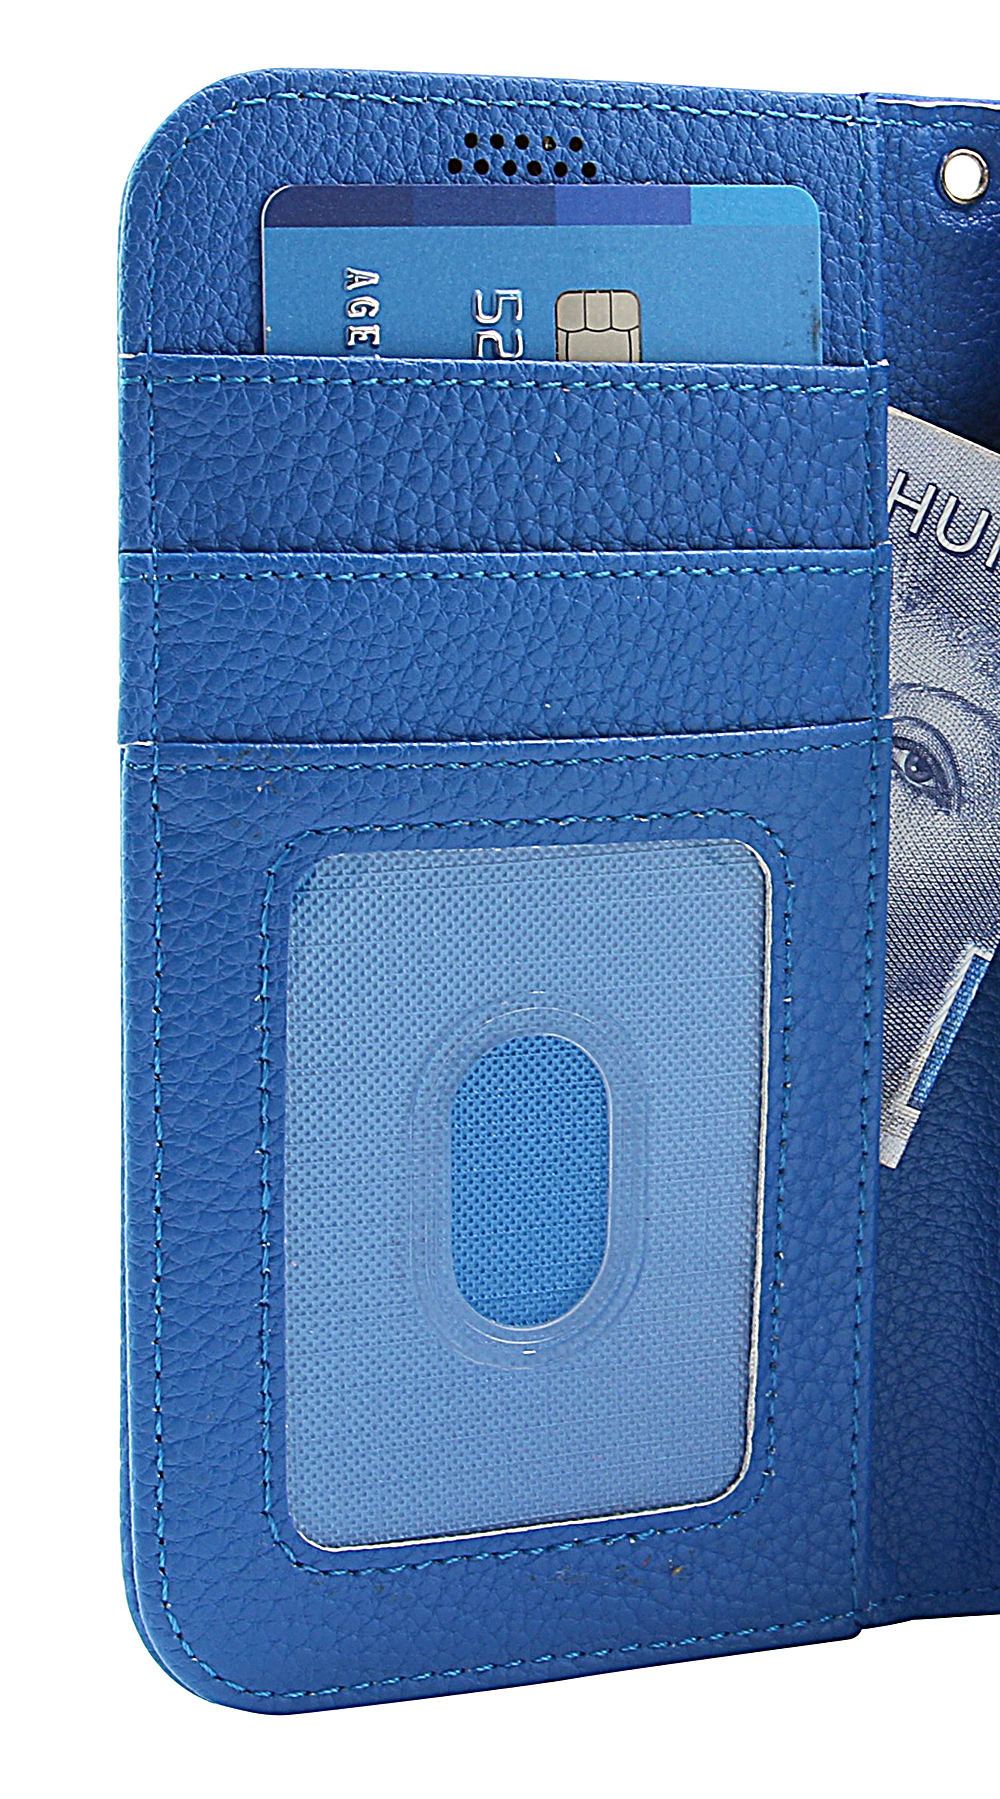 New Standcase Wallet Asus ZenFone 3 Max (ZC553KL)